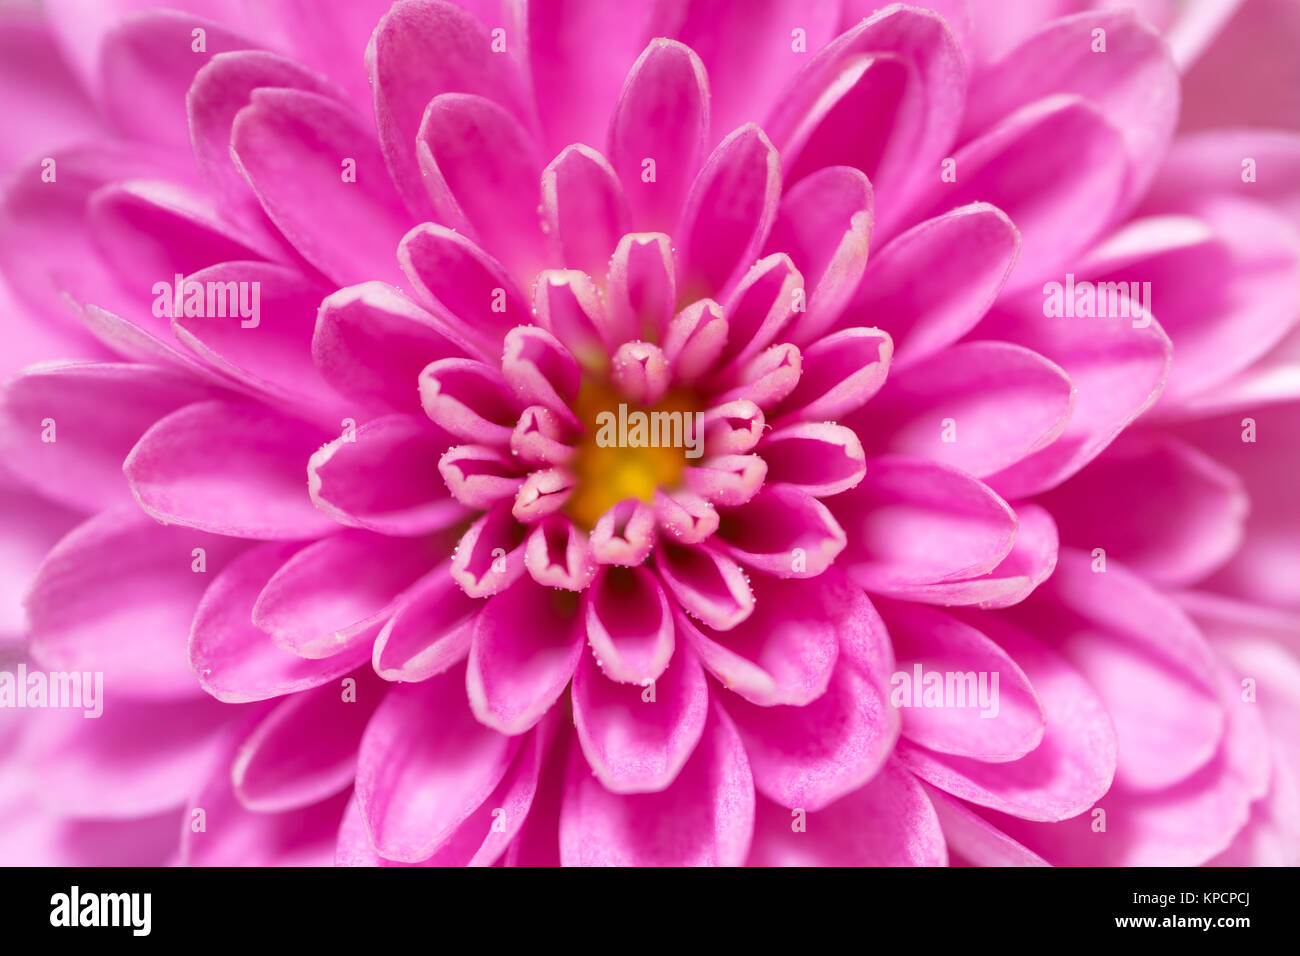 Centre de la fleur de chrysanthème Soft Focus, rose et violet, super macro closeup texture et motif, montrant les pétales de fleurs et center Banque D'Images